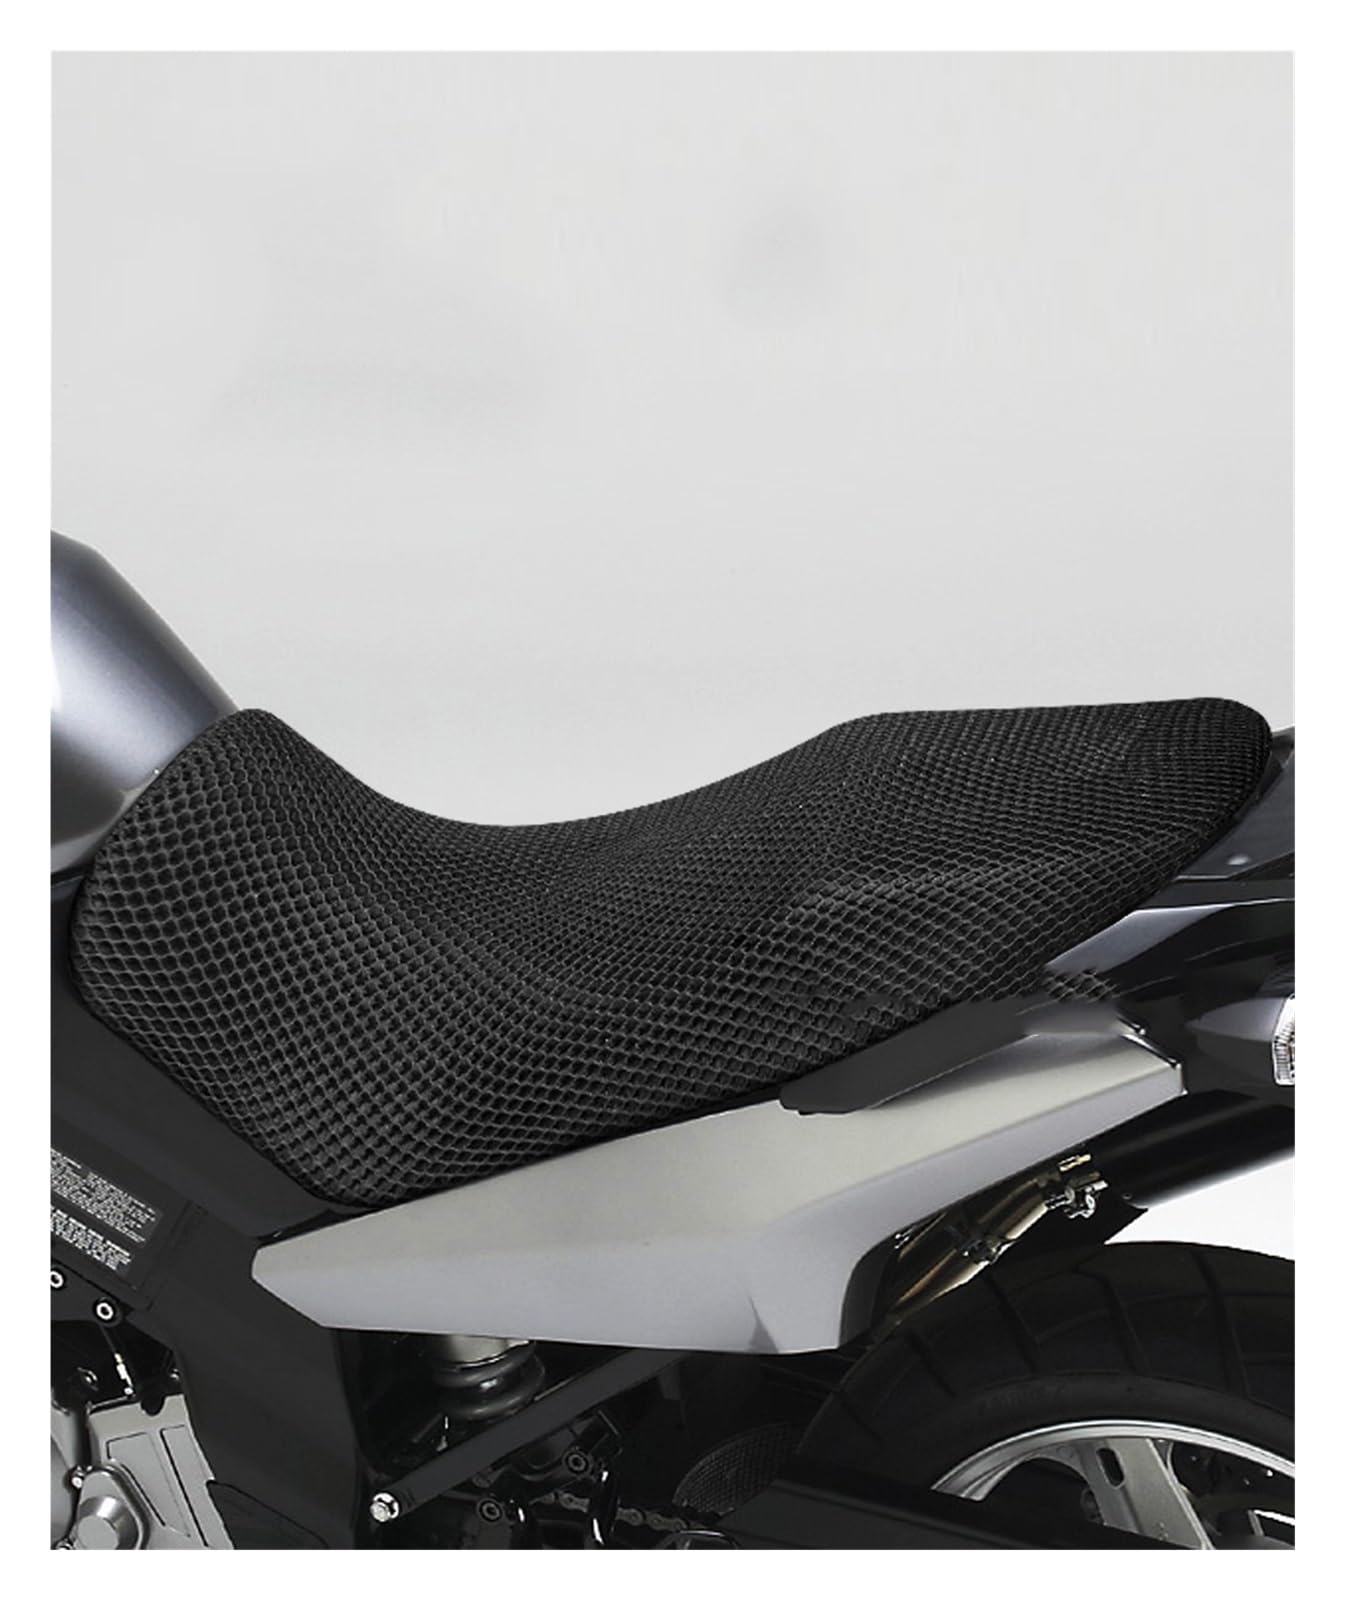 HRTLSS Sitzbezüge Motorrad Sitzkissen Abdeckung Net 3D Mesh Protector Isolierung Kissen Abdeckung Für Su@zuk*i V-Strom VStrom DL1000 DL650 DL250 DL 650 von HRTLSS